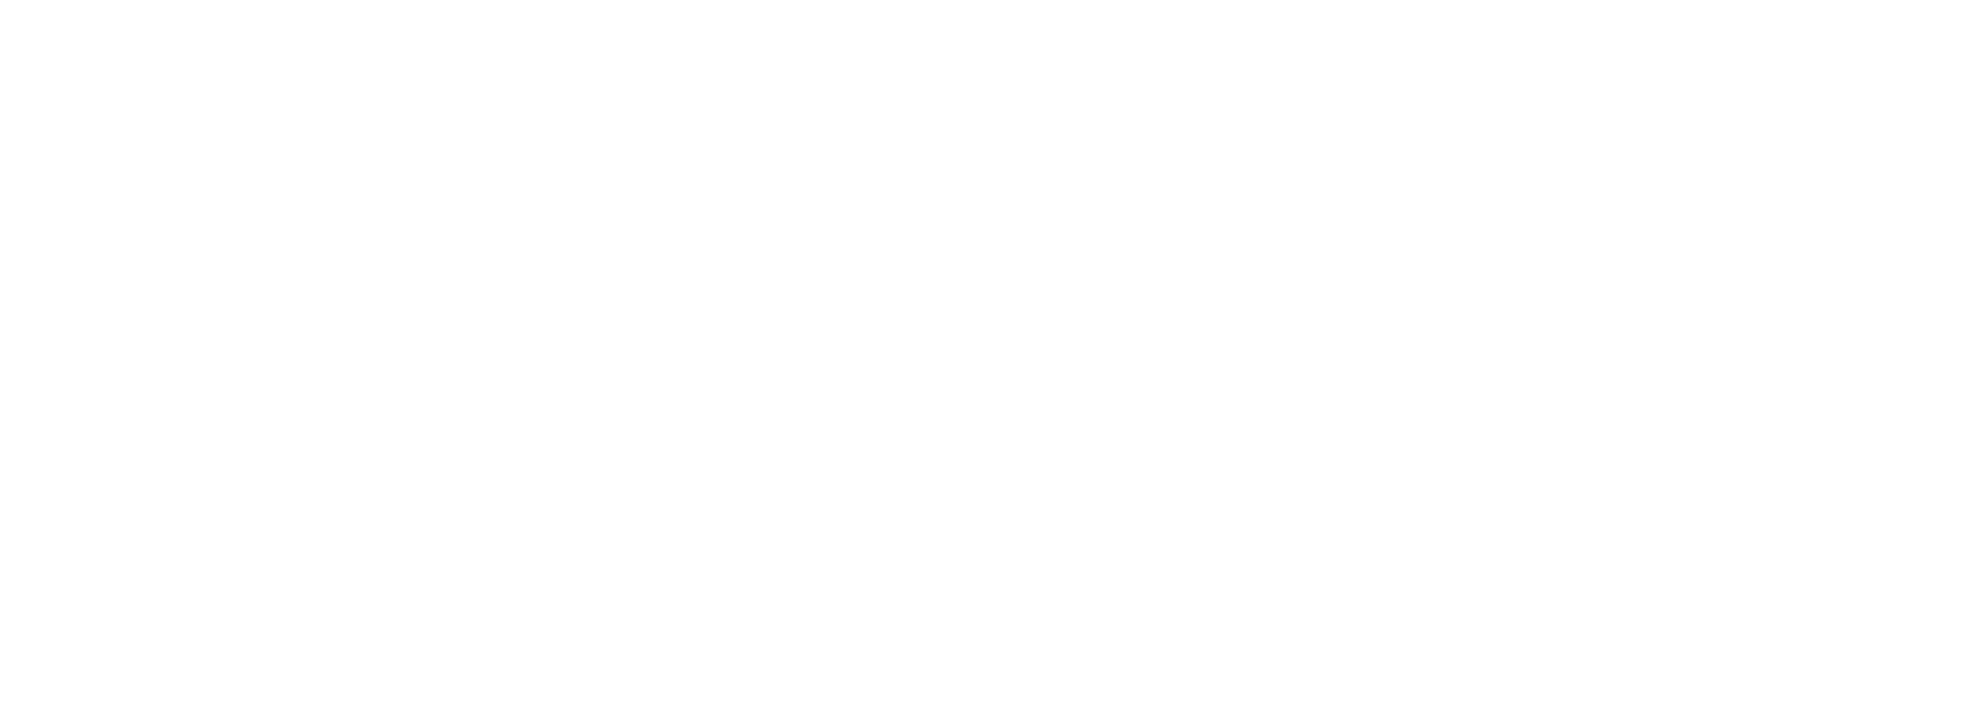 Congreso COCAHI 2023 - Congreso Internacional Cascos Históricos